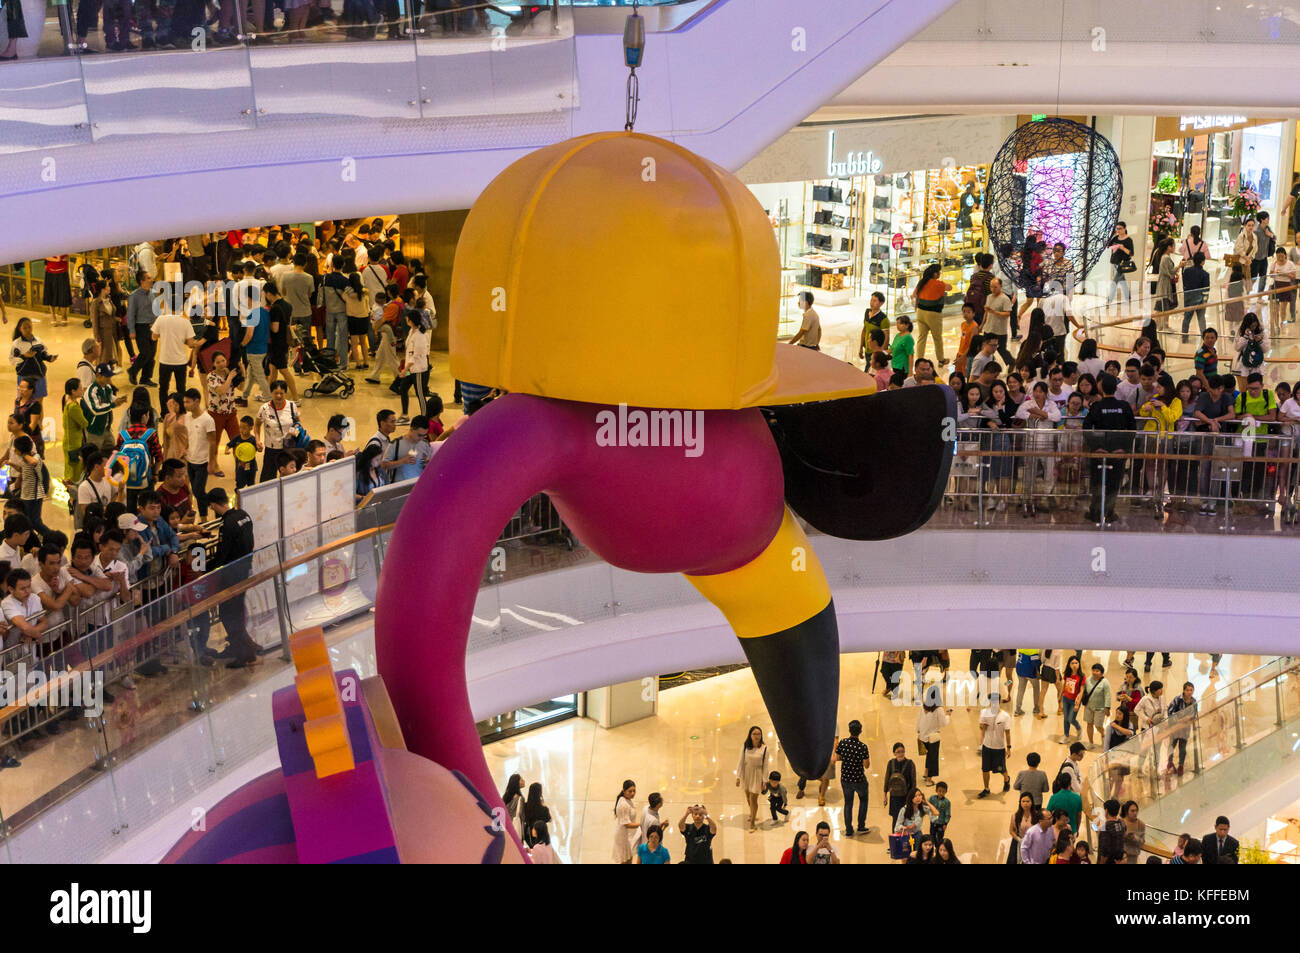 Grande ouverture de uniwalk, un centre commercial mega chinois à Shenzhen, Chine. Banque D'Images